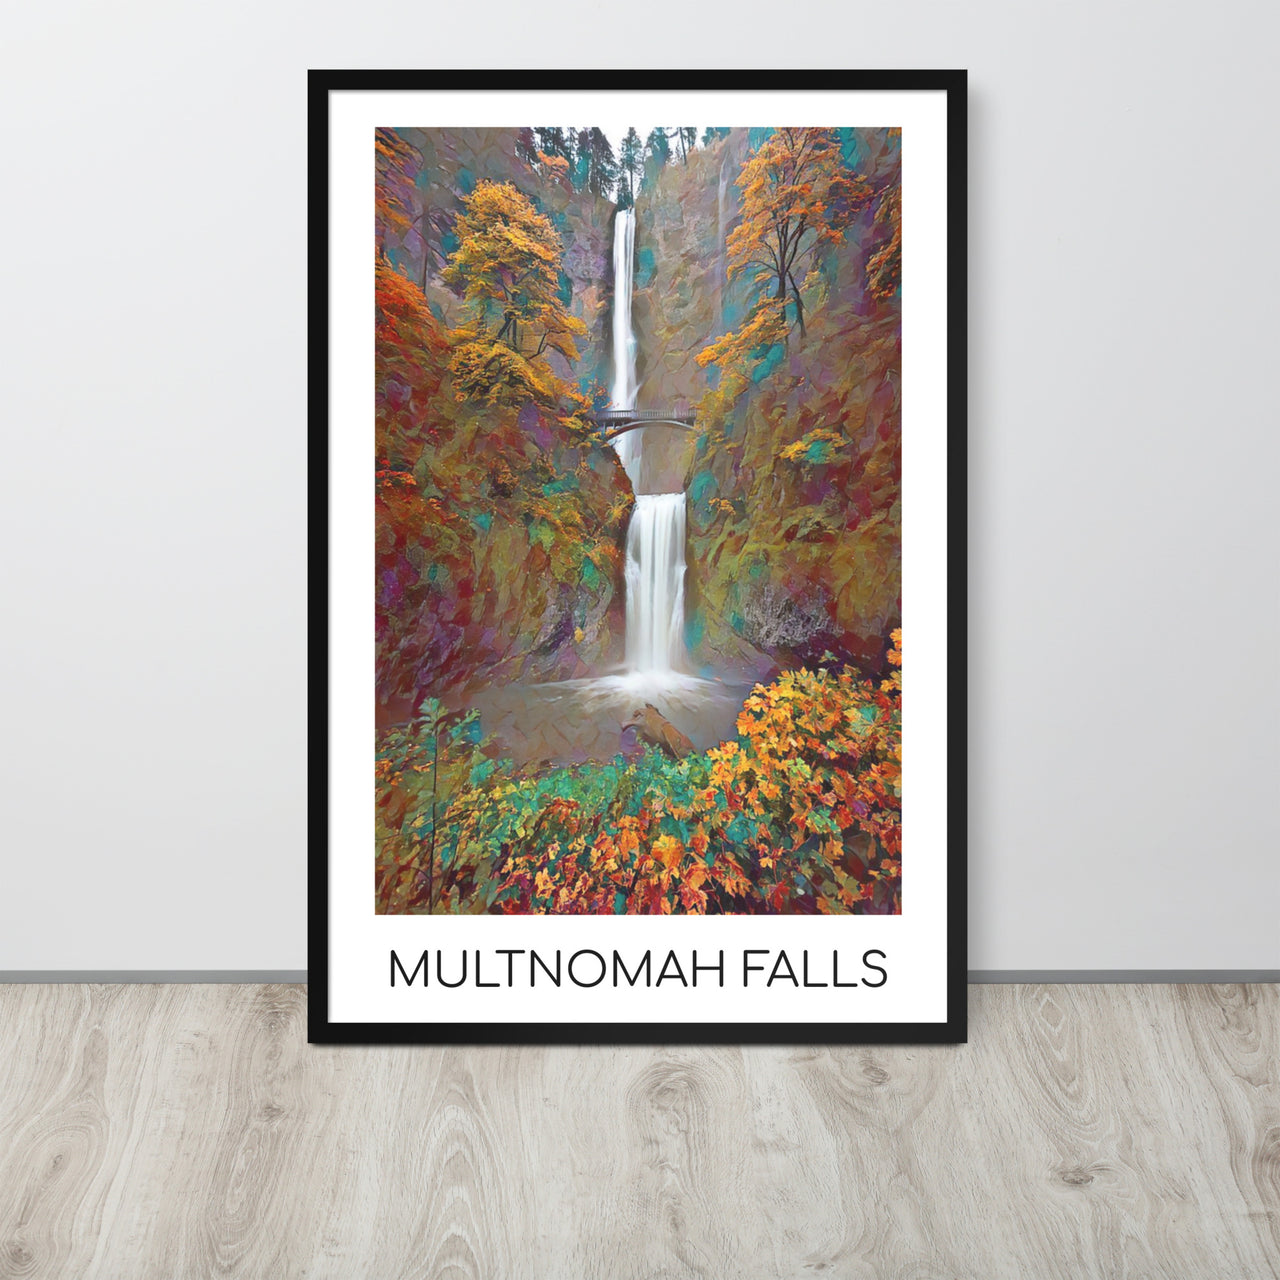 Multnomah Falls - Framed poster